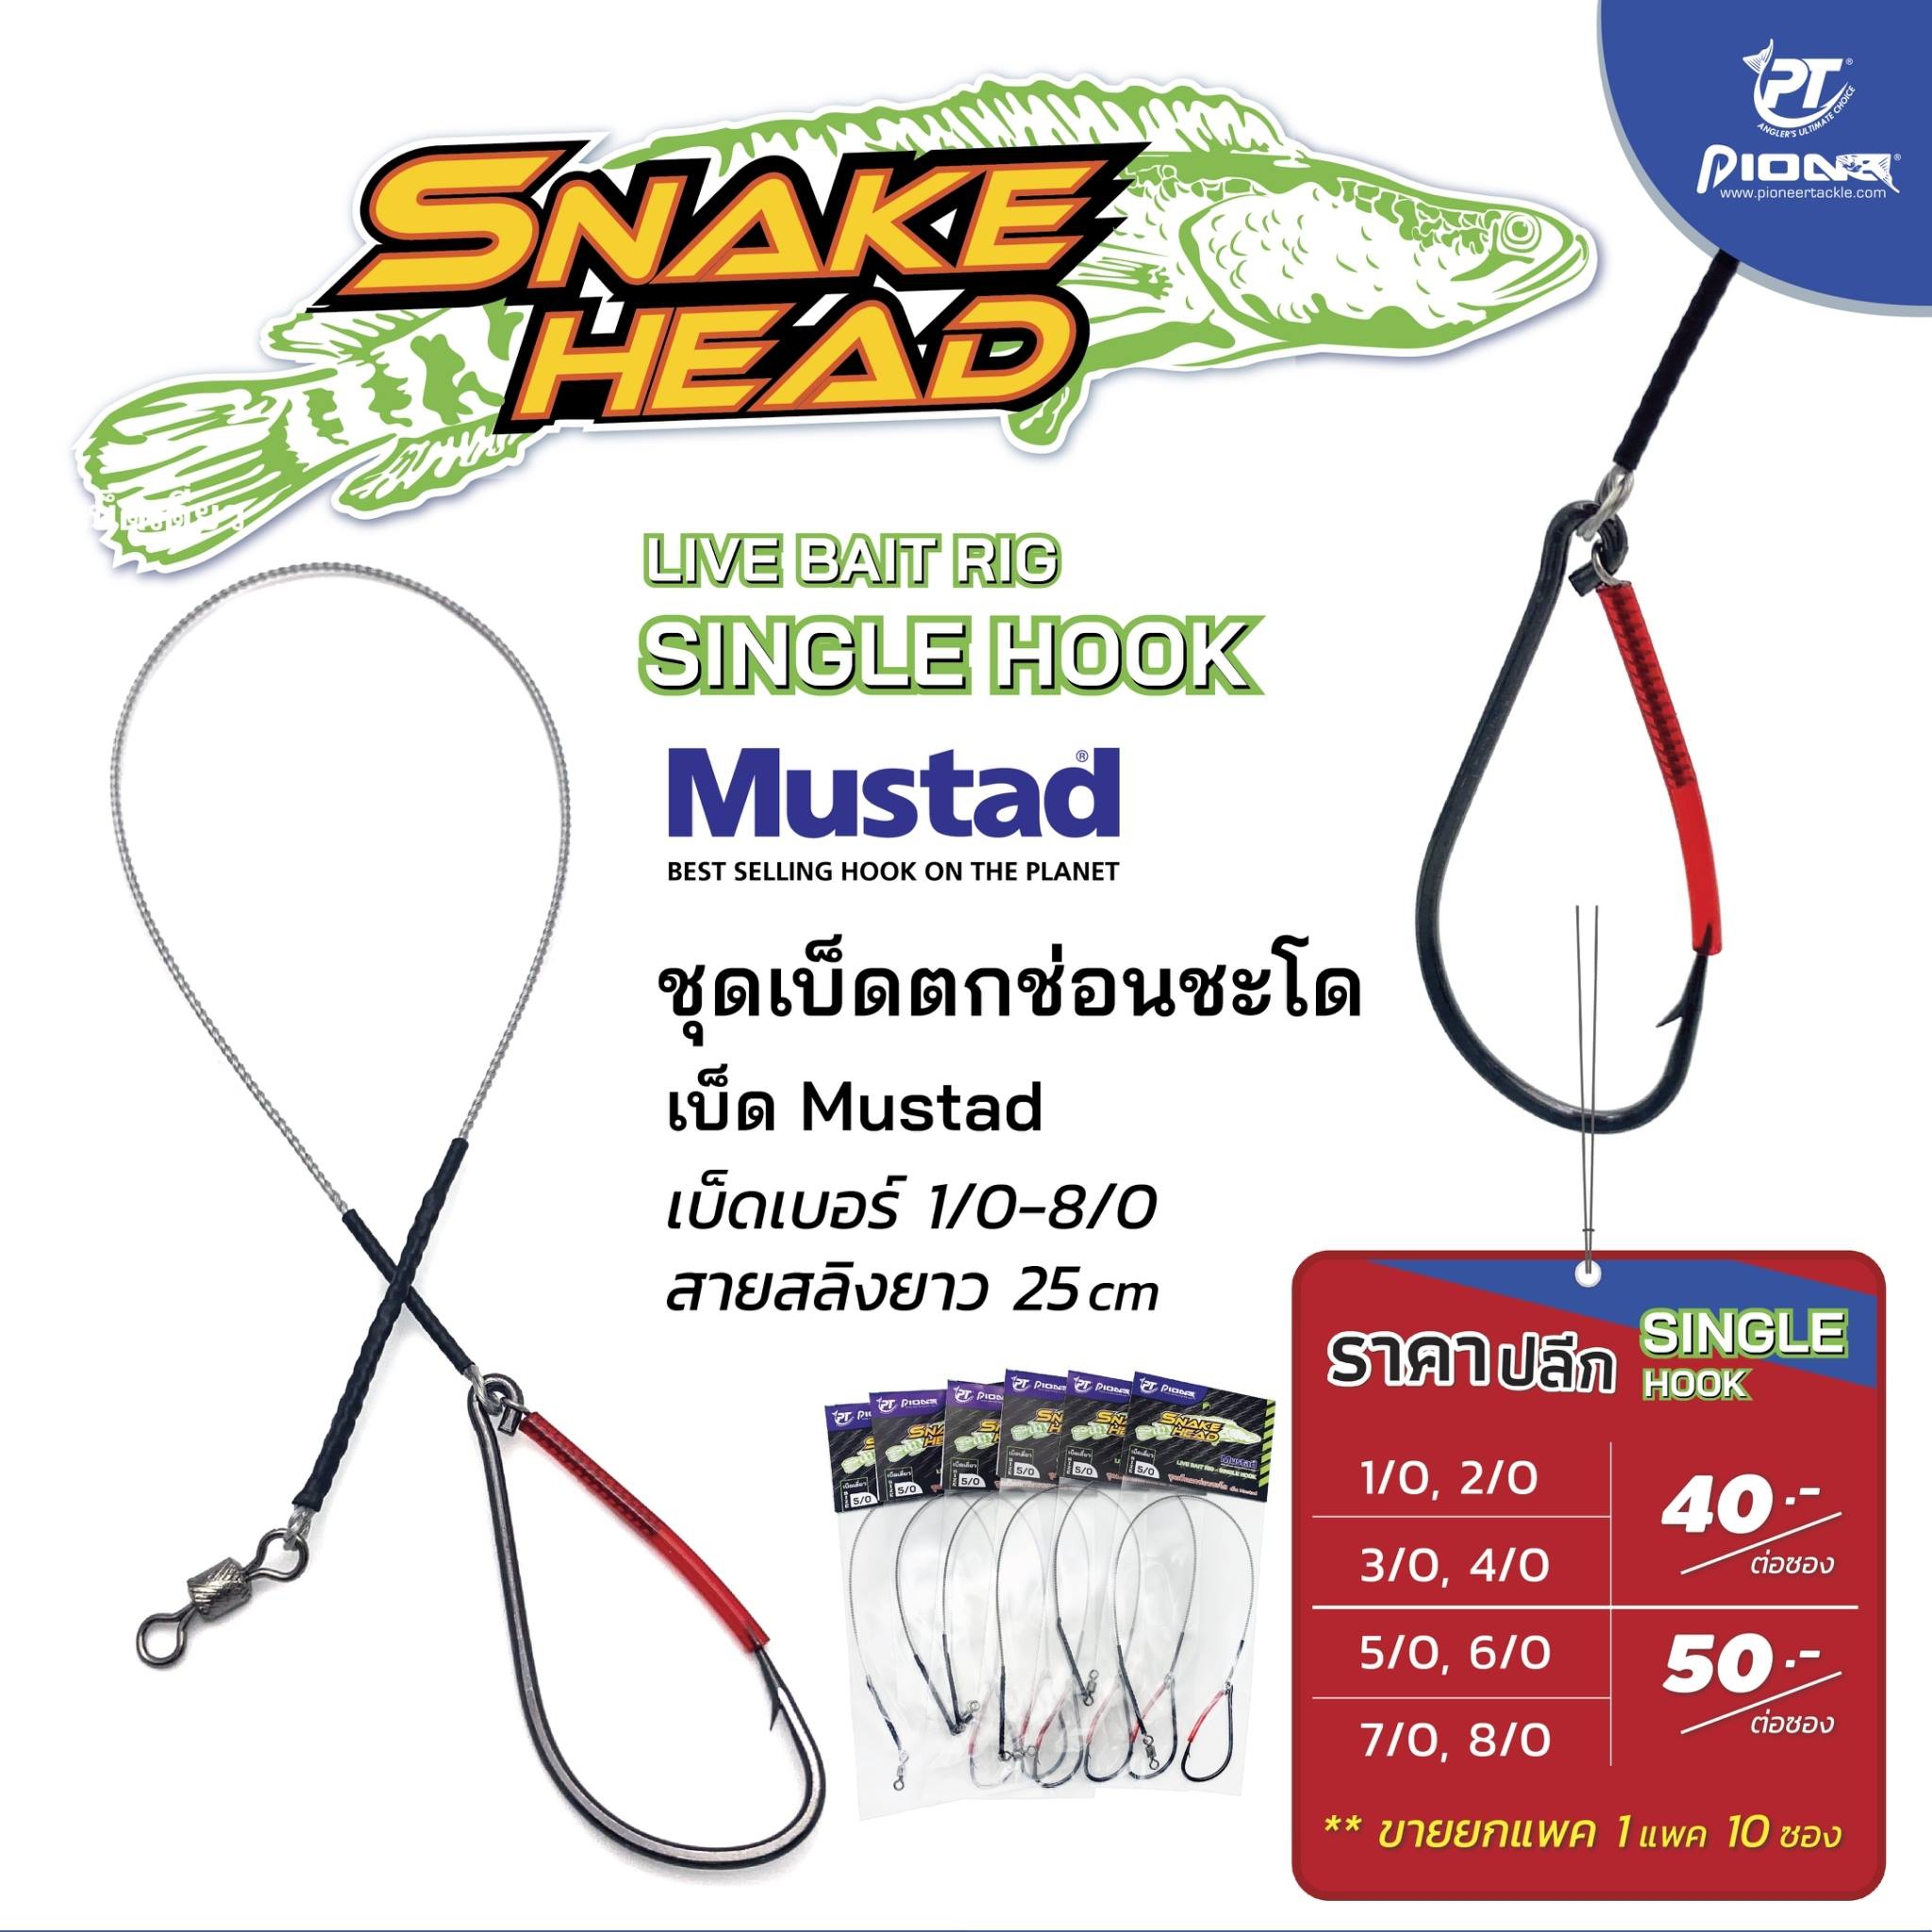 Pioneer Snake Head Live Bait Rig Single Hook 25cm #6/0*Mustad Hook